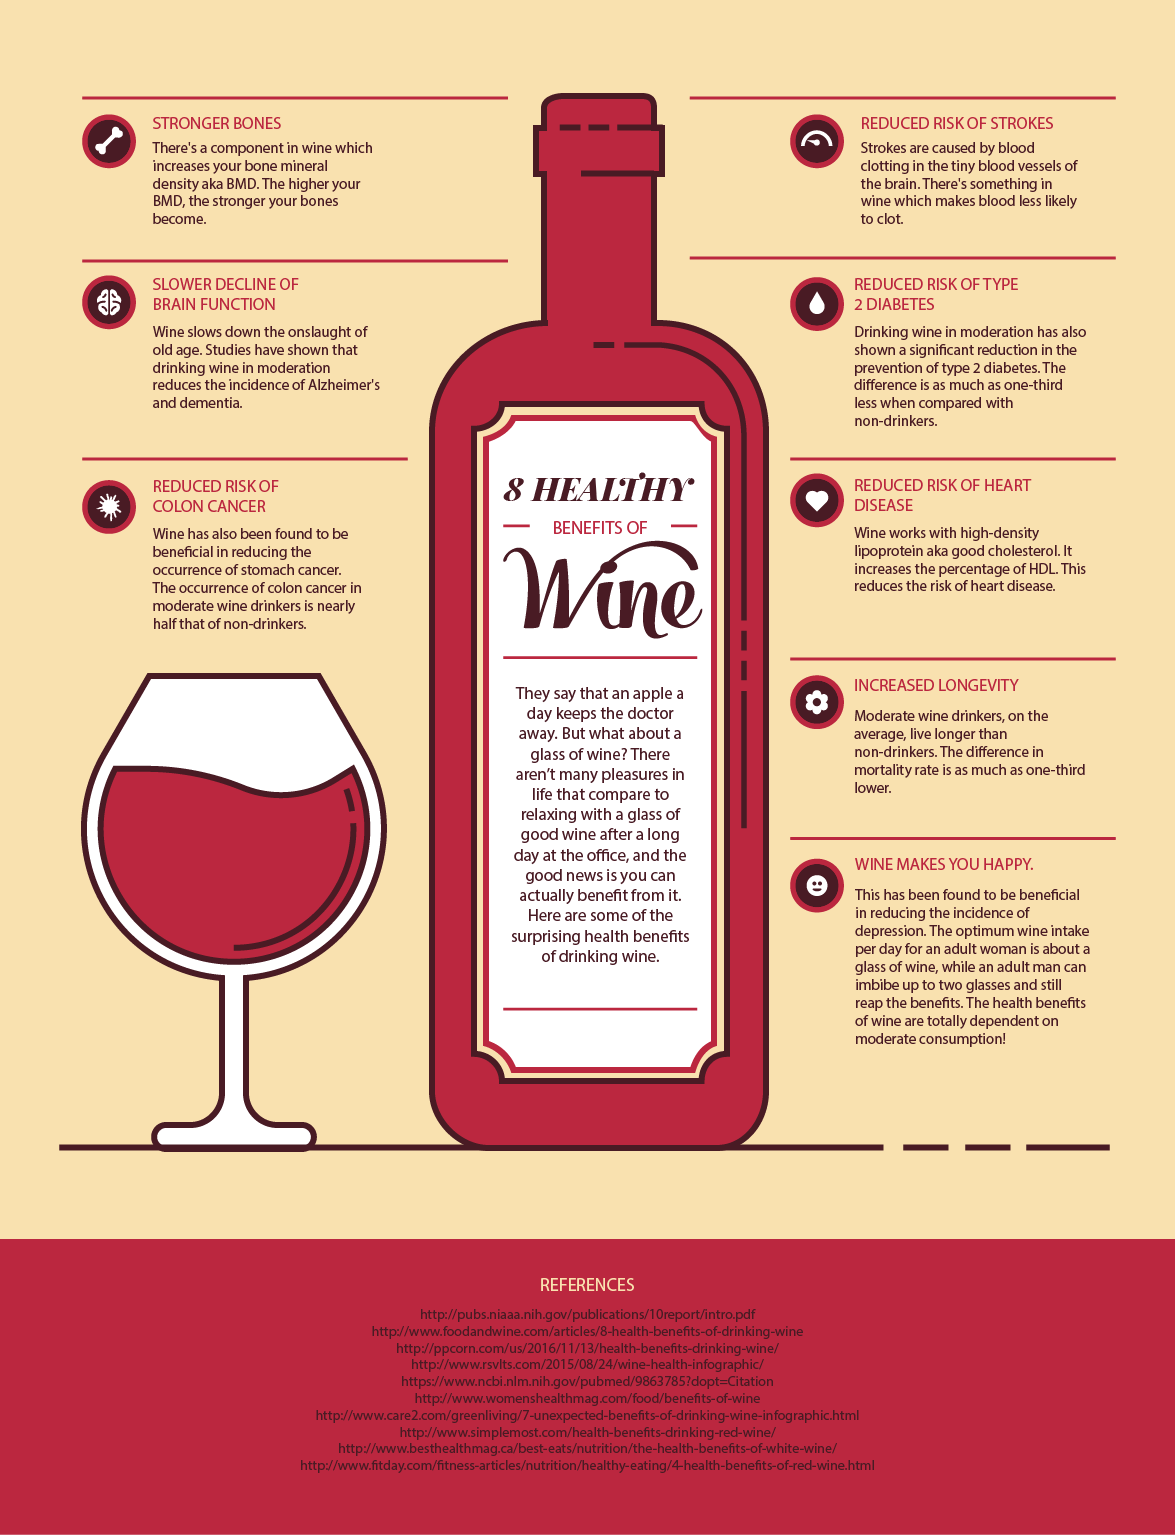 8 Healthy Benefits of Wine